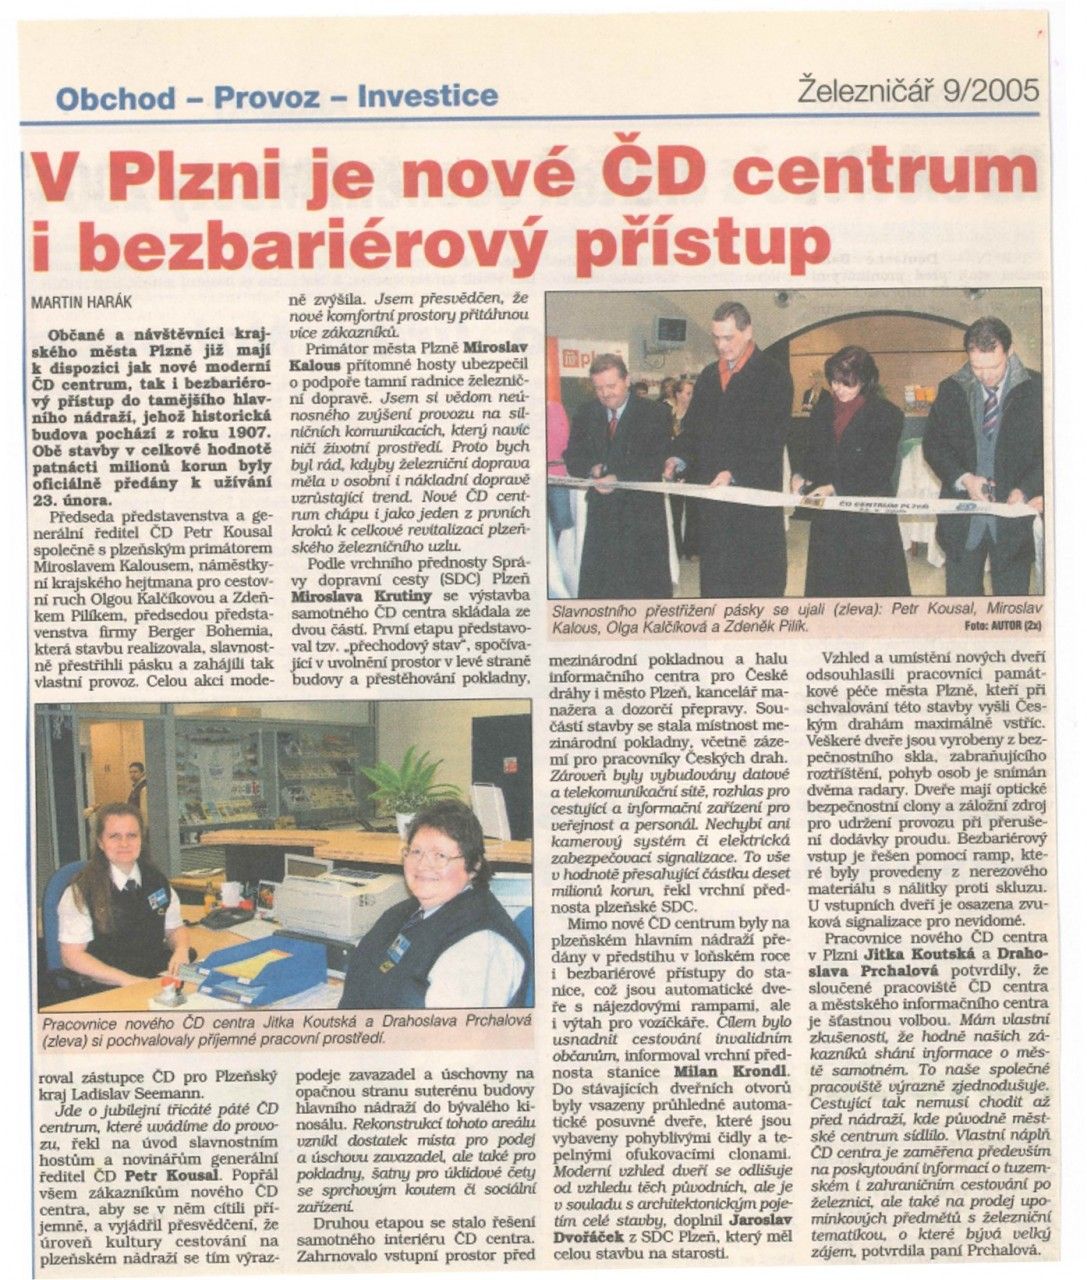 elezni 9/2005: V Plzni je nov D centrum i bezbarirov pstup